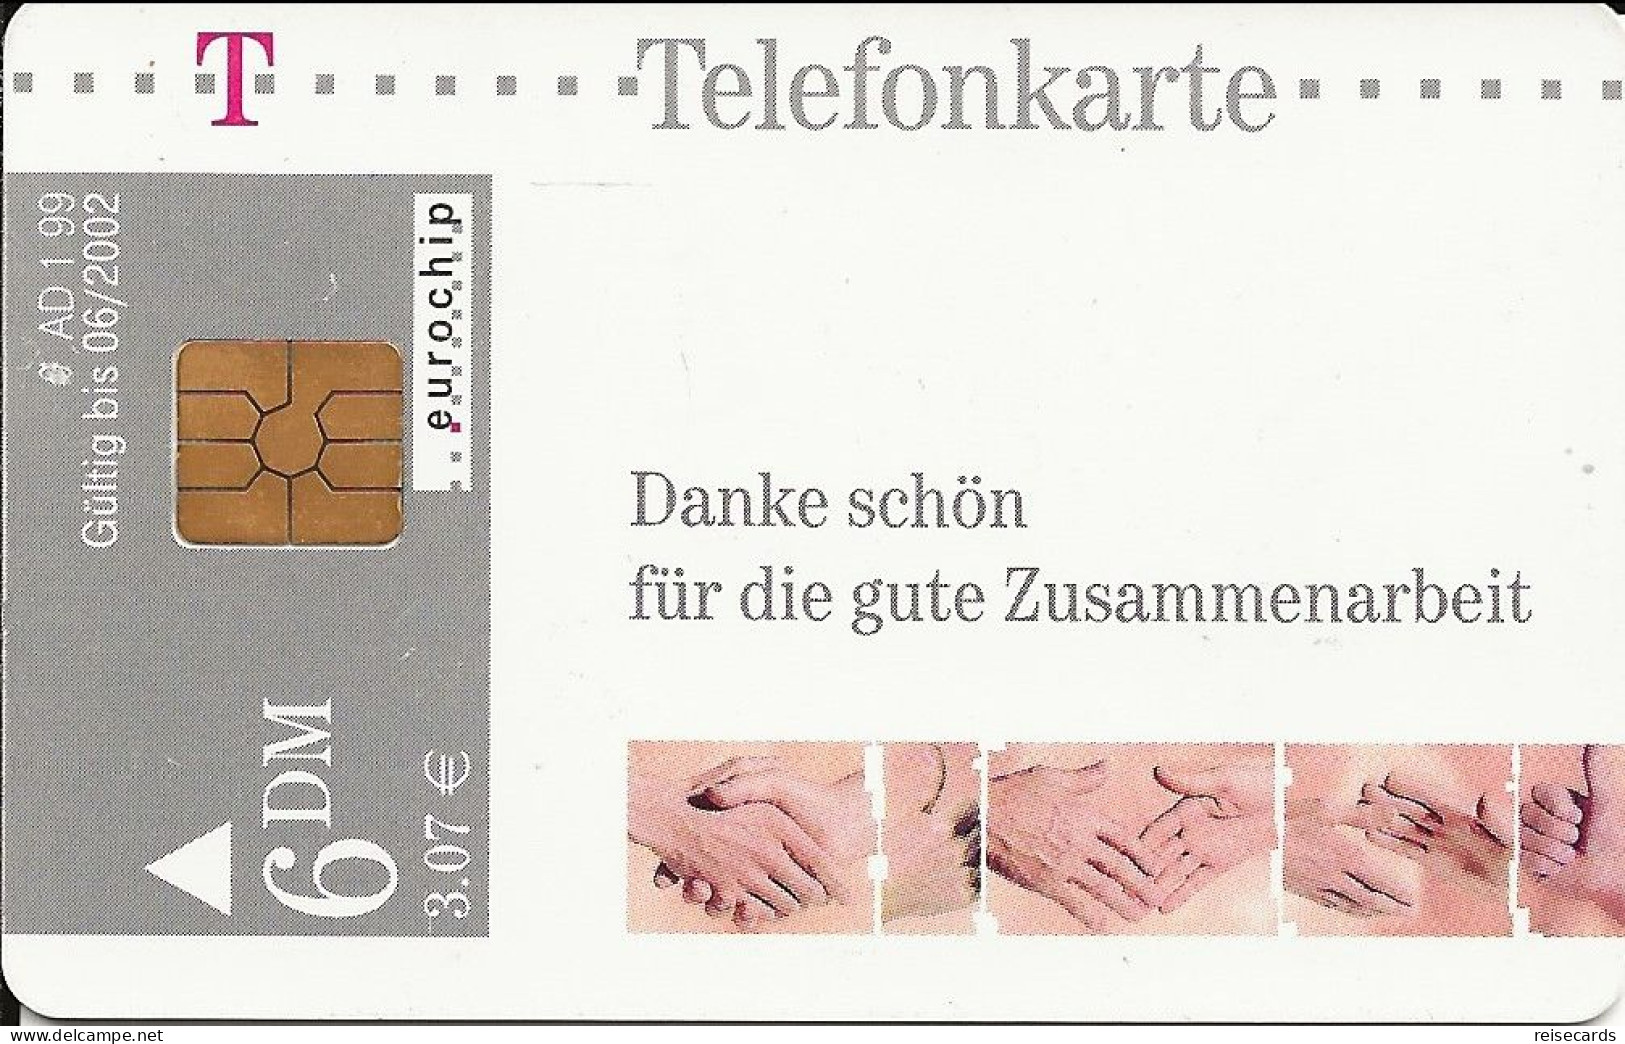 Germany: Telekom AD 1 99 Danke Schön Für Die Gute Zusammenarbeit - A + AD-Series : Publicitaires - D. Telekom AG